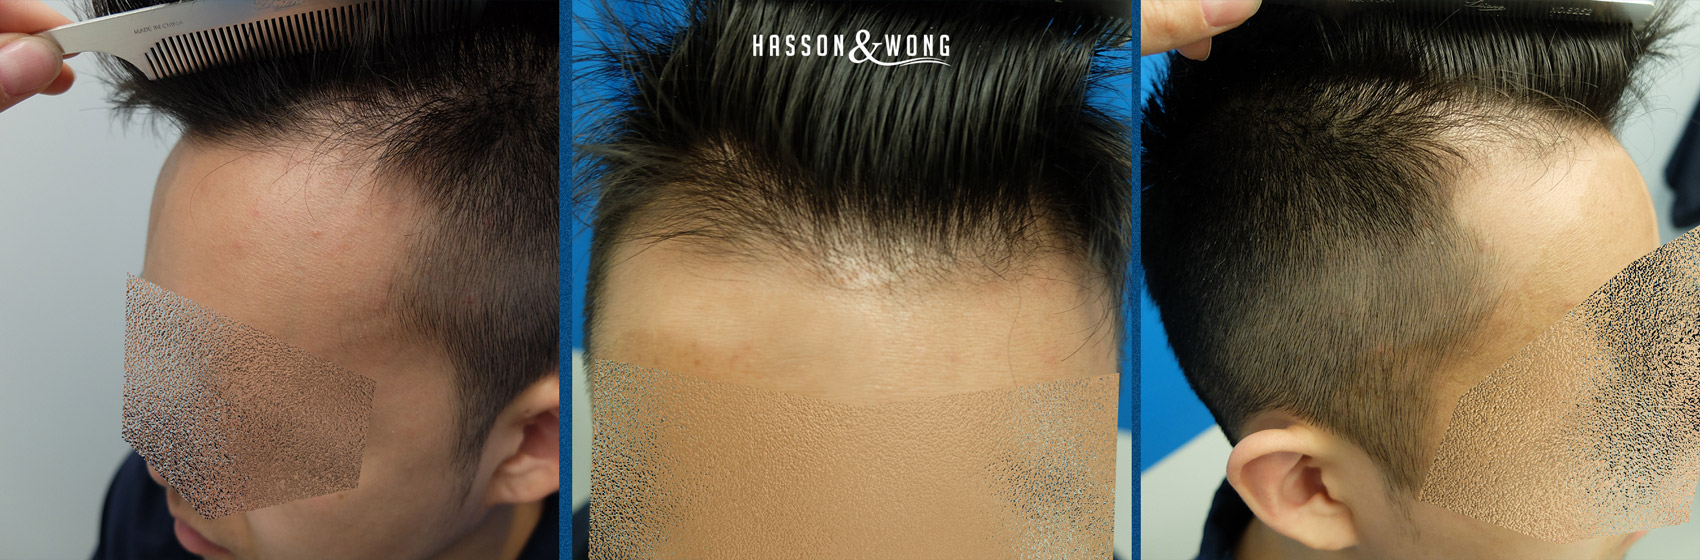 FUE-Hair-Transplant-1.jpg